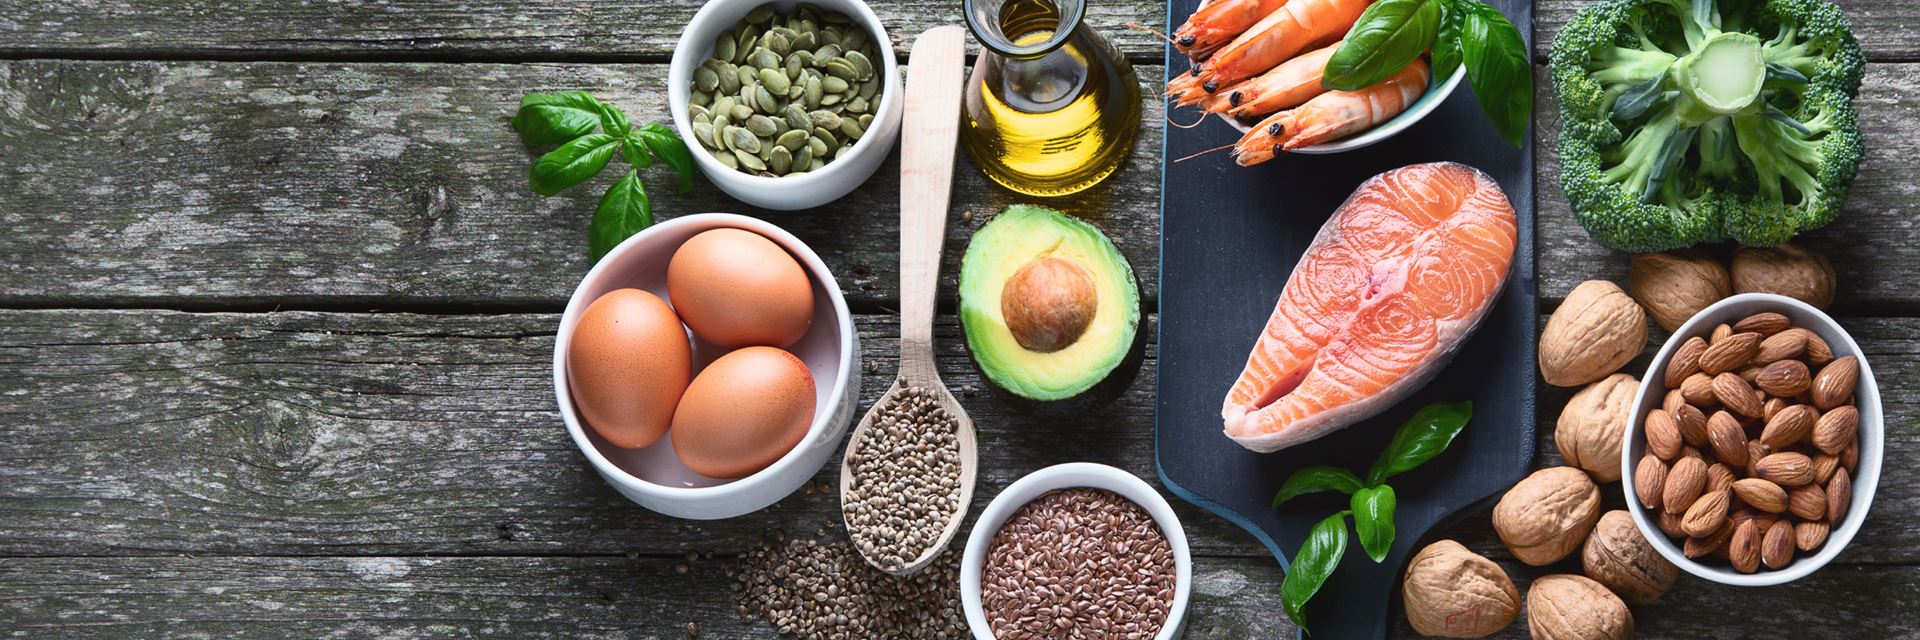 Des recommandations nutritionnelles pour réduire le cholestérol